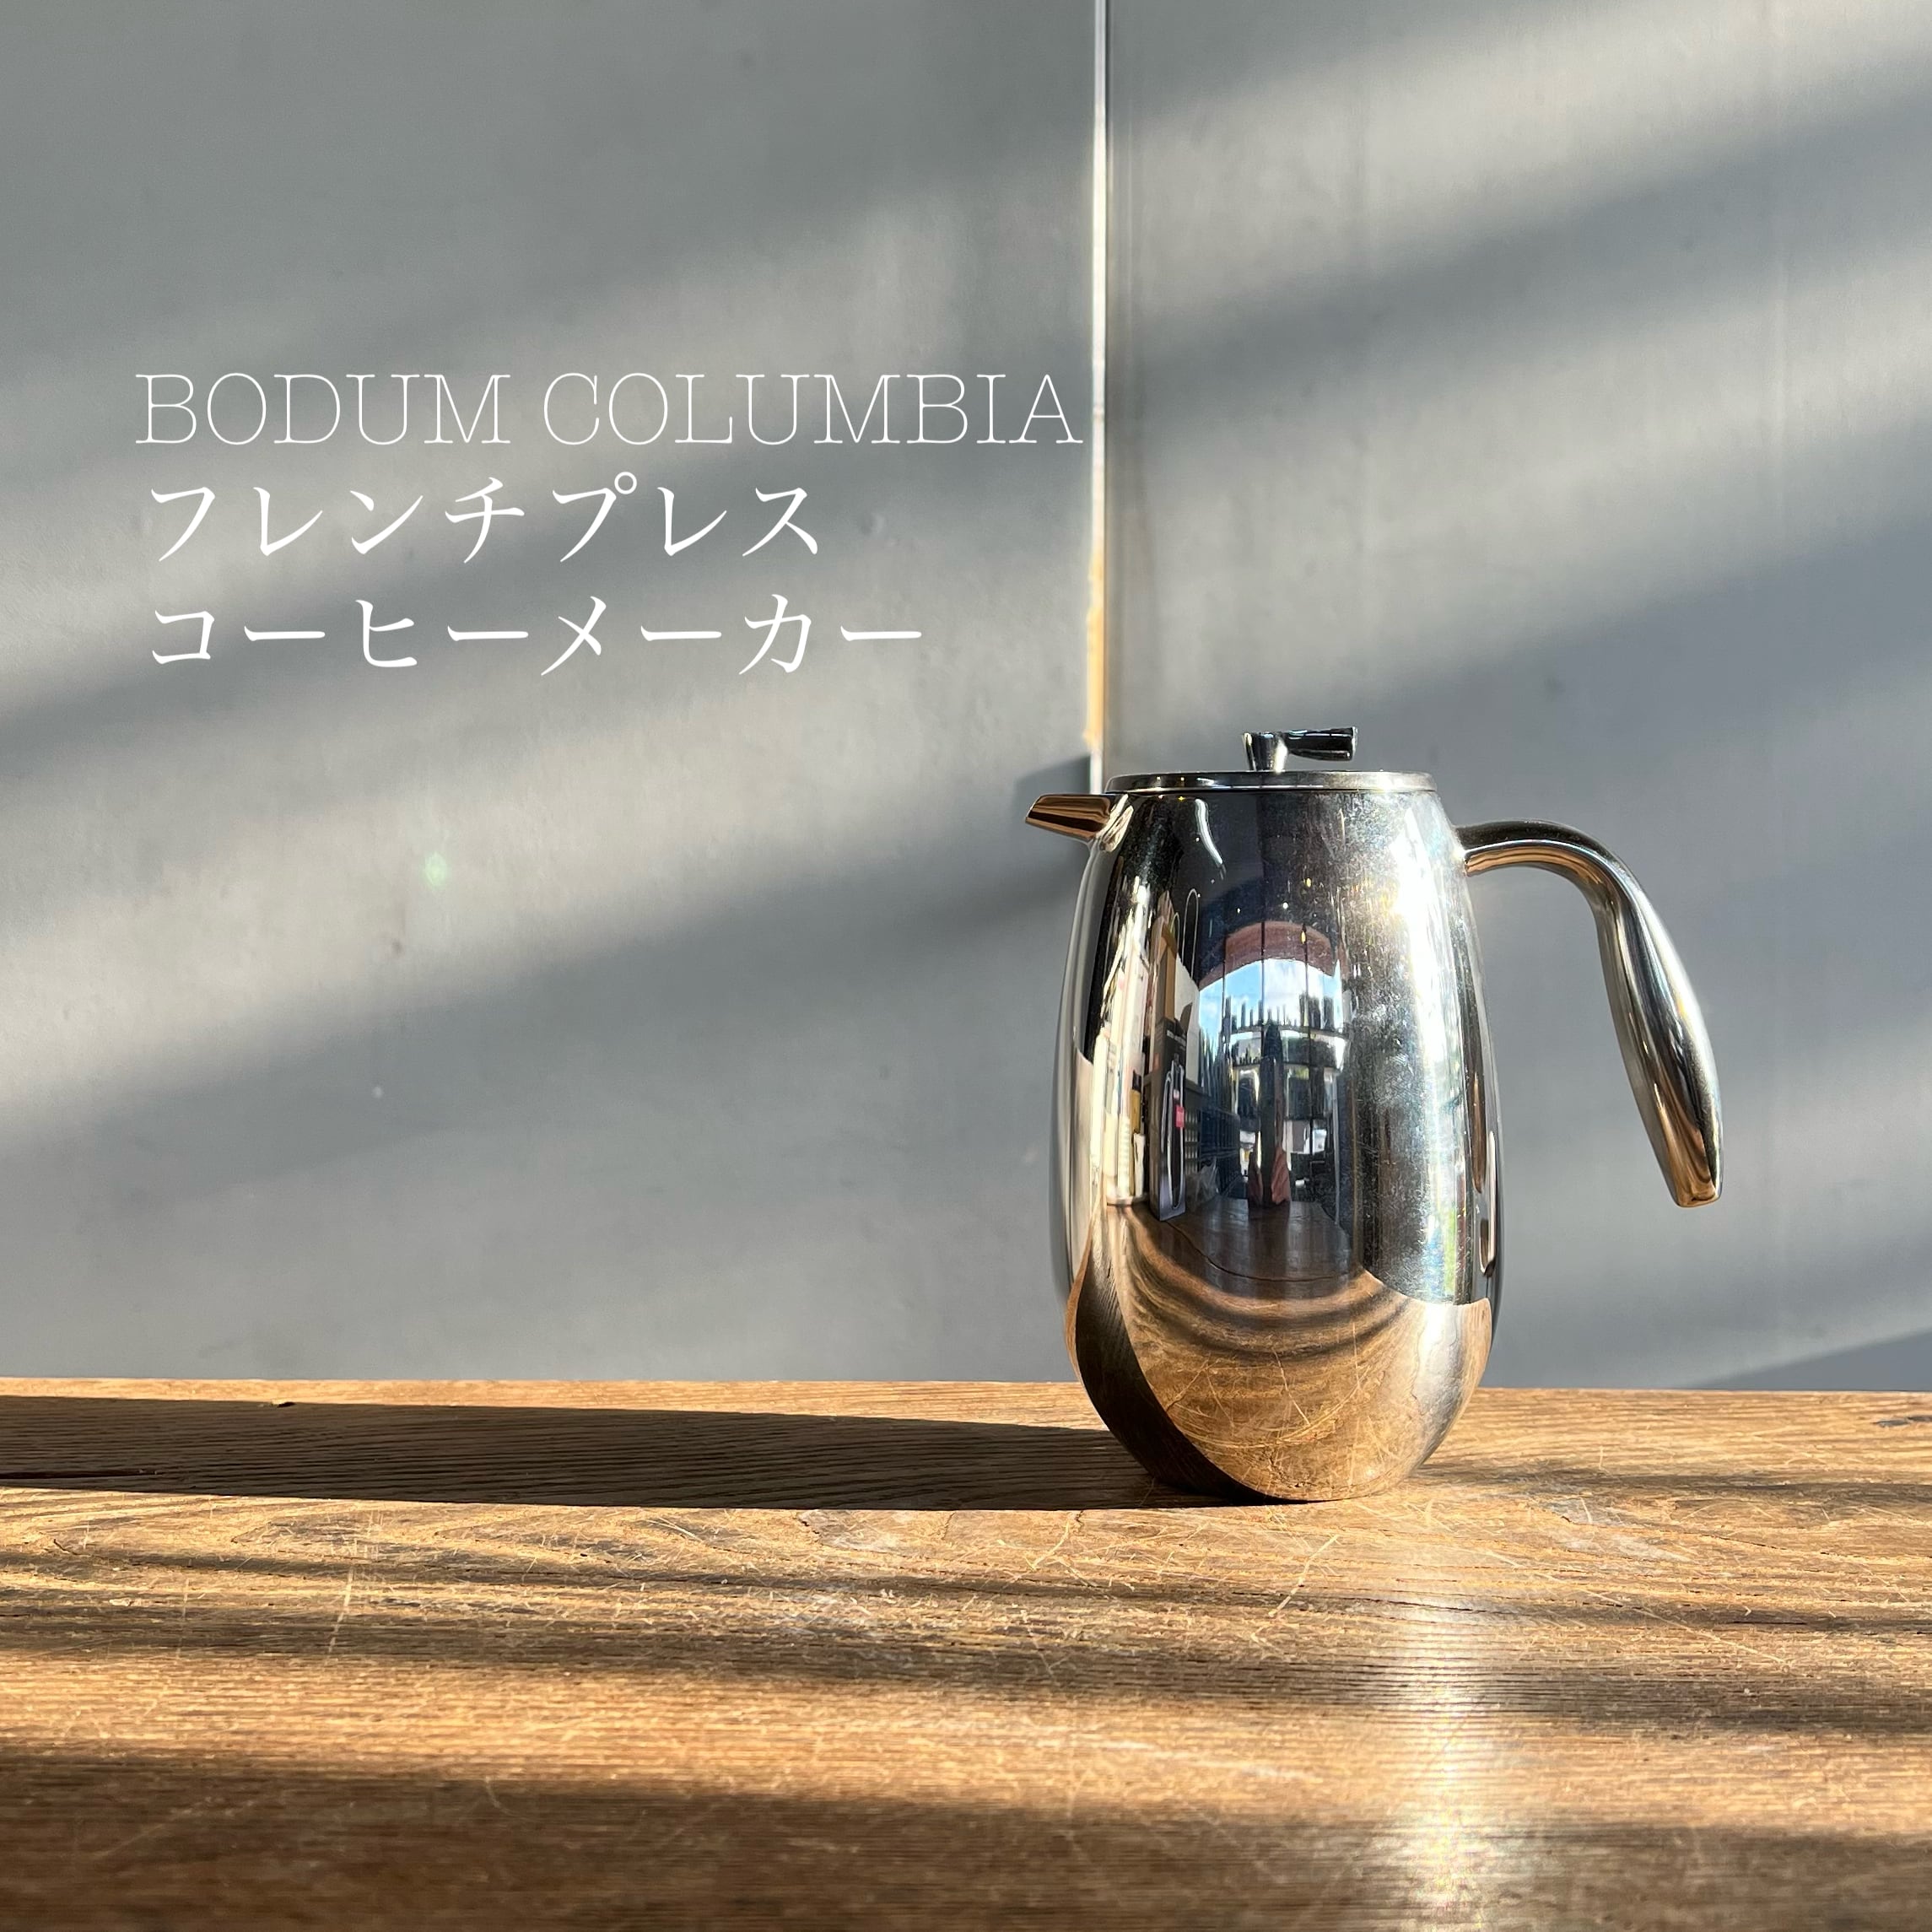 【送料無料★】BODUM COLUMBIA フレンチプレスコーヒーメーカー/350ml